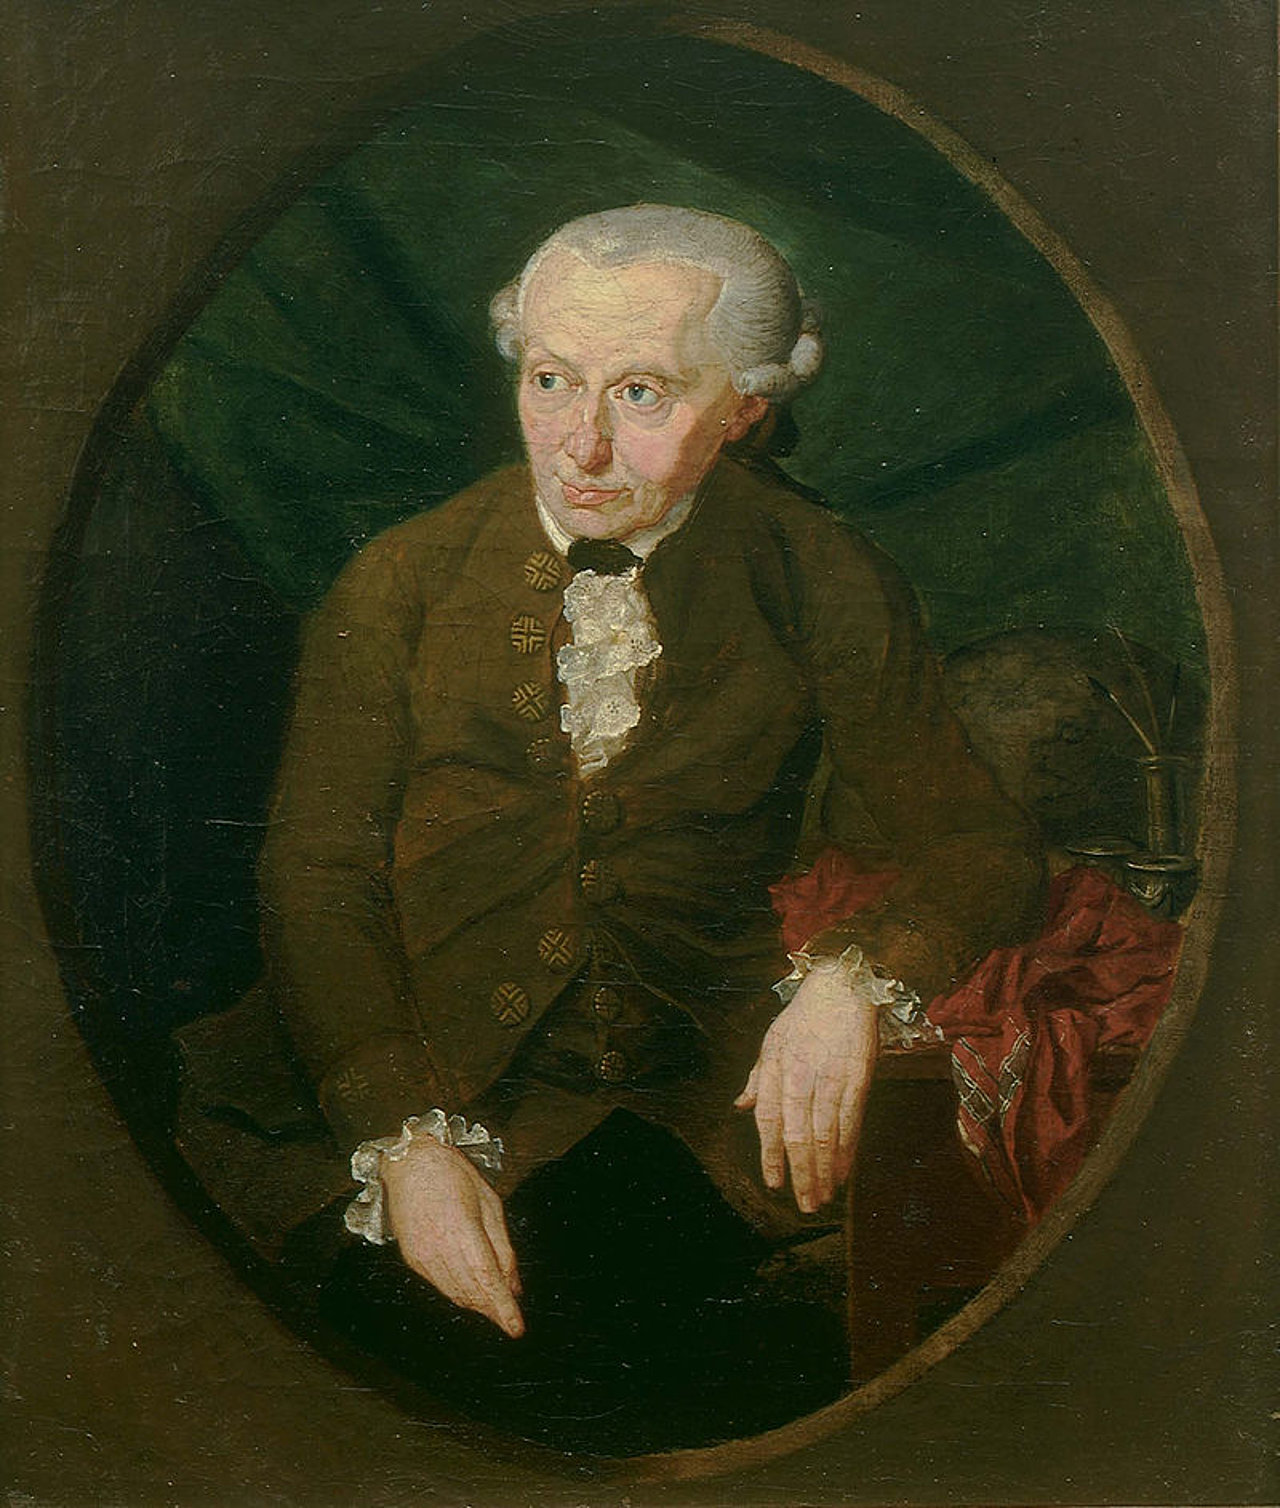 Immanuel Kant (1724-1804) war bereits zu Lebzeiten ein bedeutender Königsberger Philosoph, der noch heute als einer der bedeutendsten Philosophen gilt.